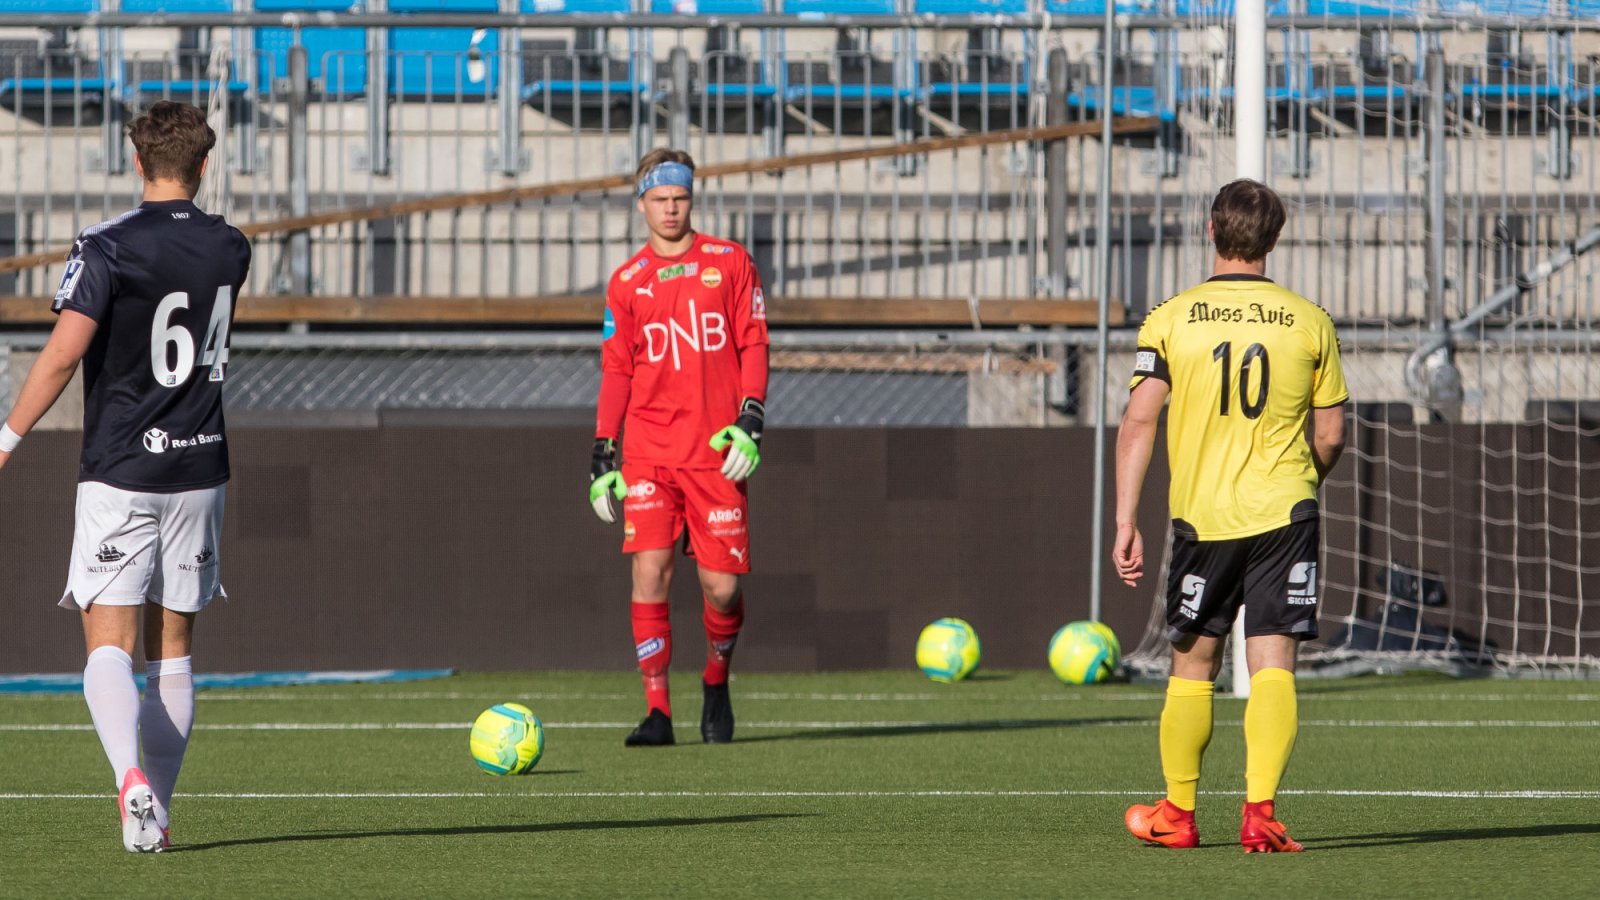 Team SIF - Moss FK 2-5, 18. april 2017: Matias Tjellaug Finnestrand. Kasper Flo (nr. 64) i forgrunnen.